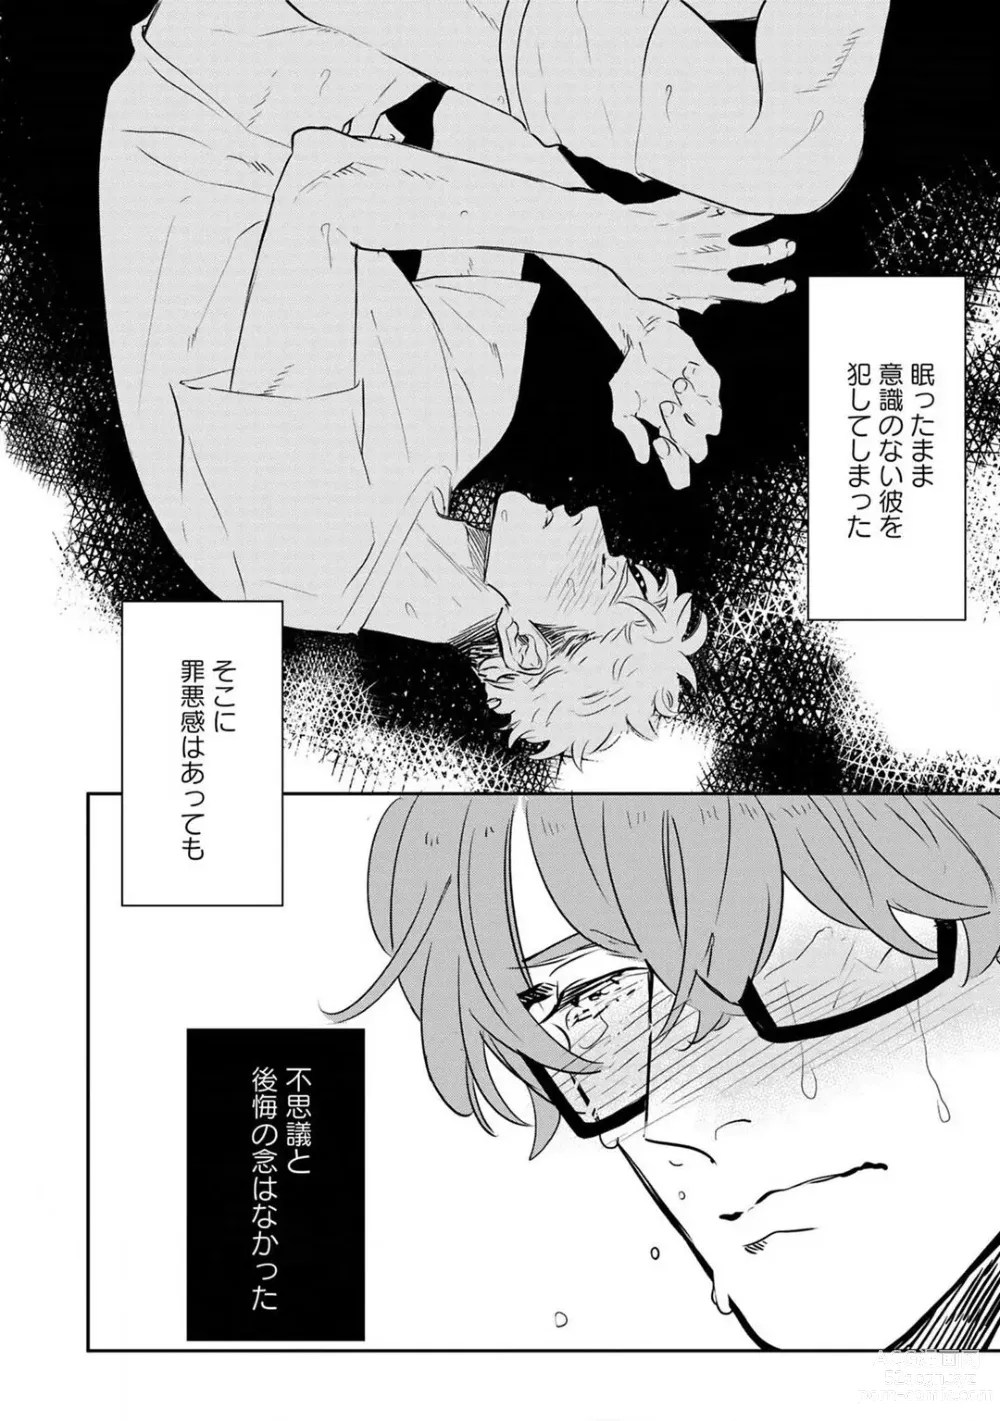 Page 3 of manga Kimi no Shiranai xx